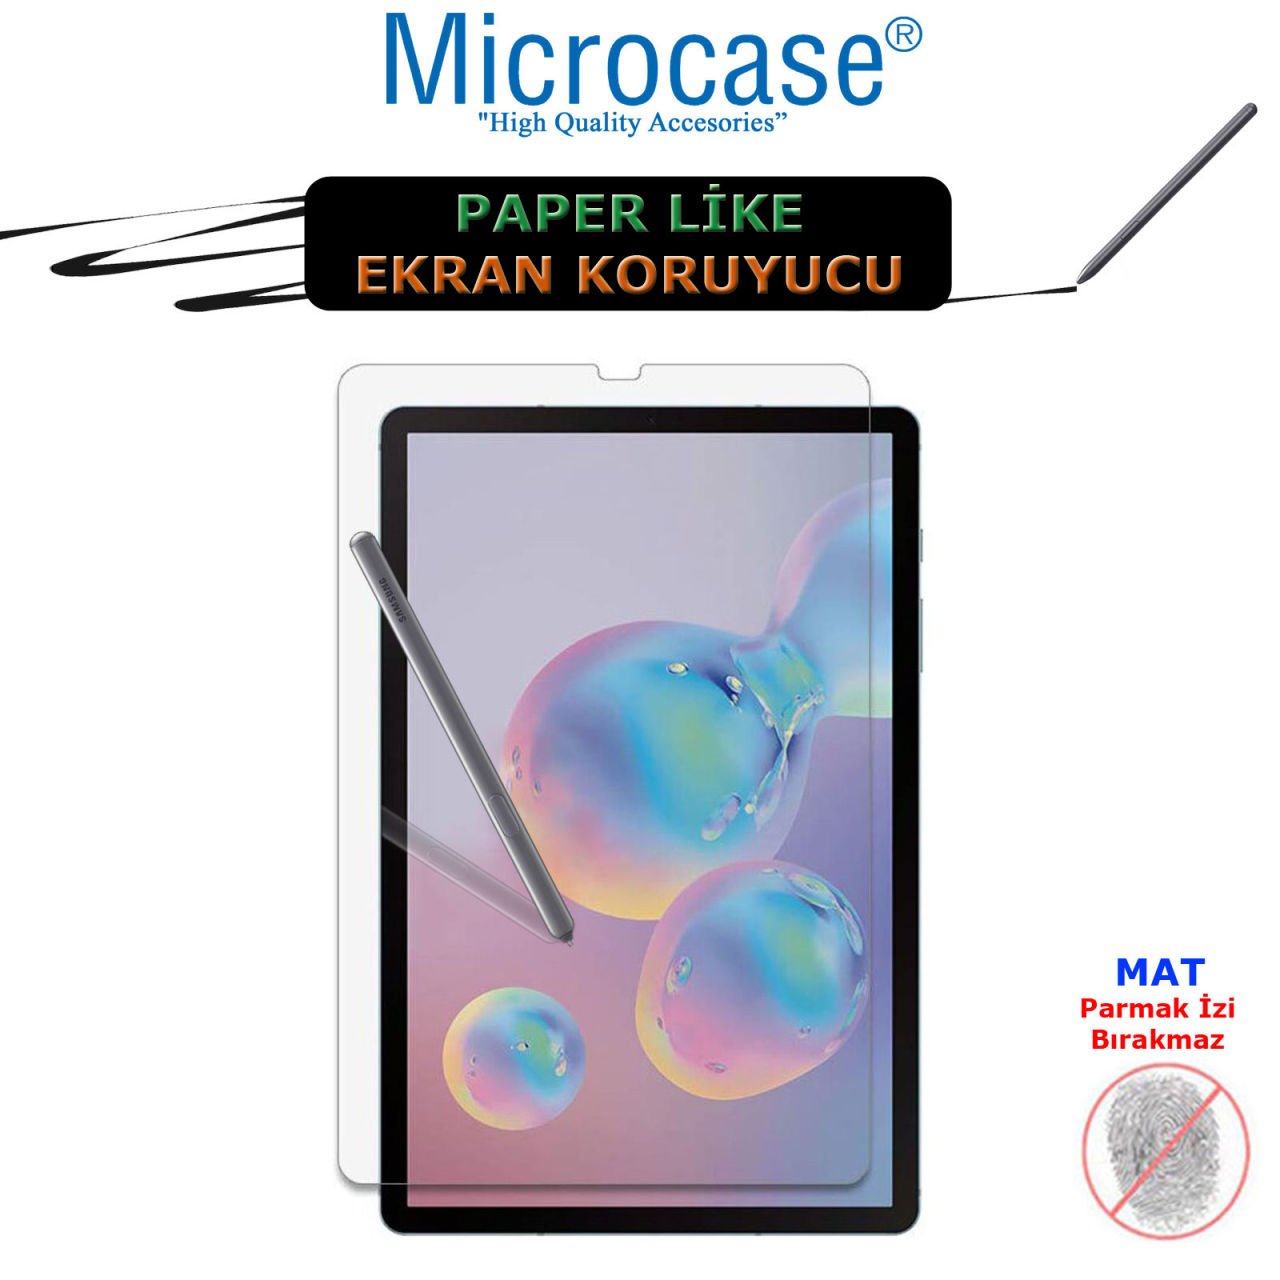 Microcase Samsung Galaxy Tab S6 10.6 inç T860 T867 Paper Like Kağıt Hissi Veren MAT Ekran Koruyucu